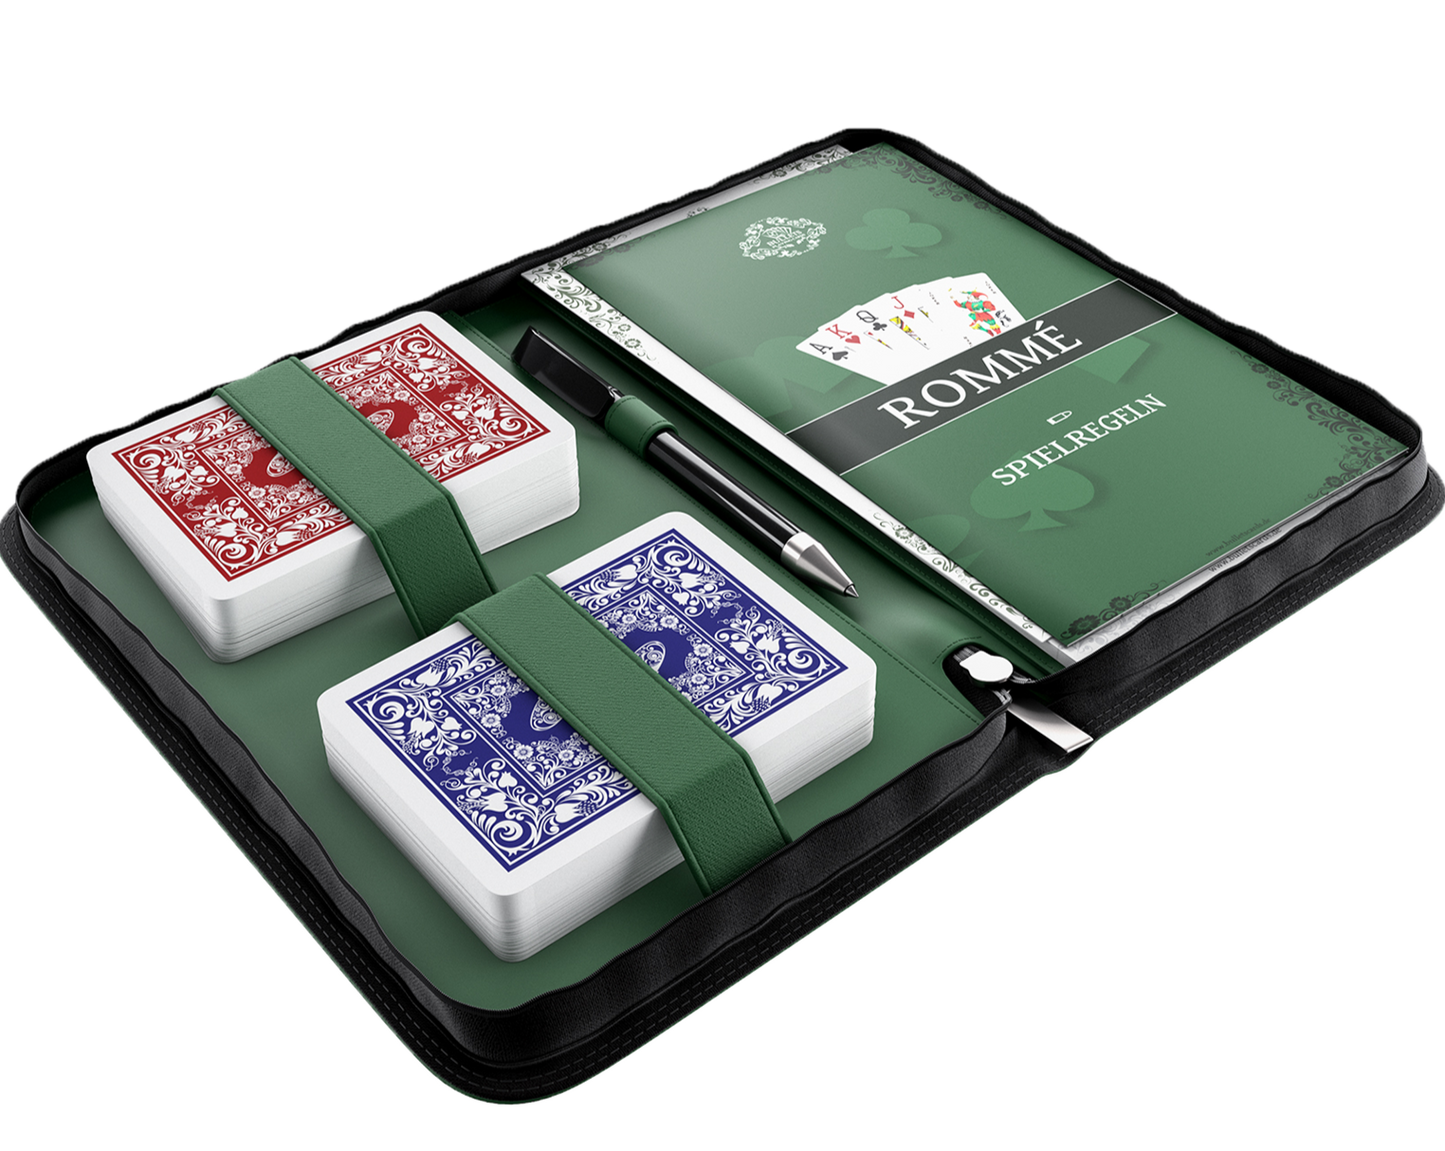 Set Ramino in custodia in finta pelle, incluse carte da gioco in plastica, regole con 15 varianti di Ramino, regole brevi, penna e blocco